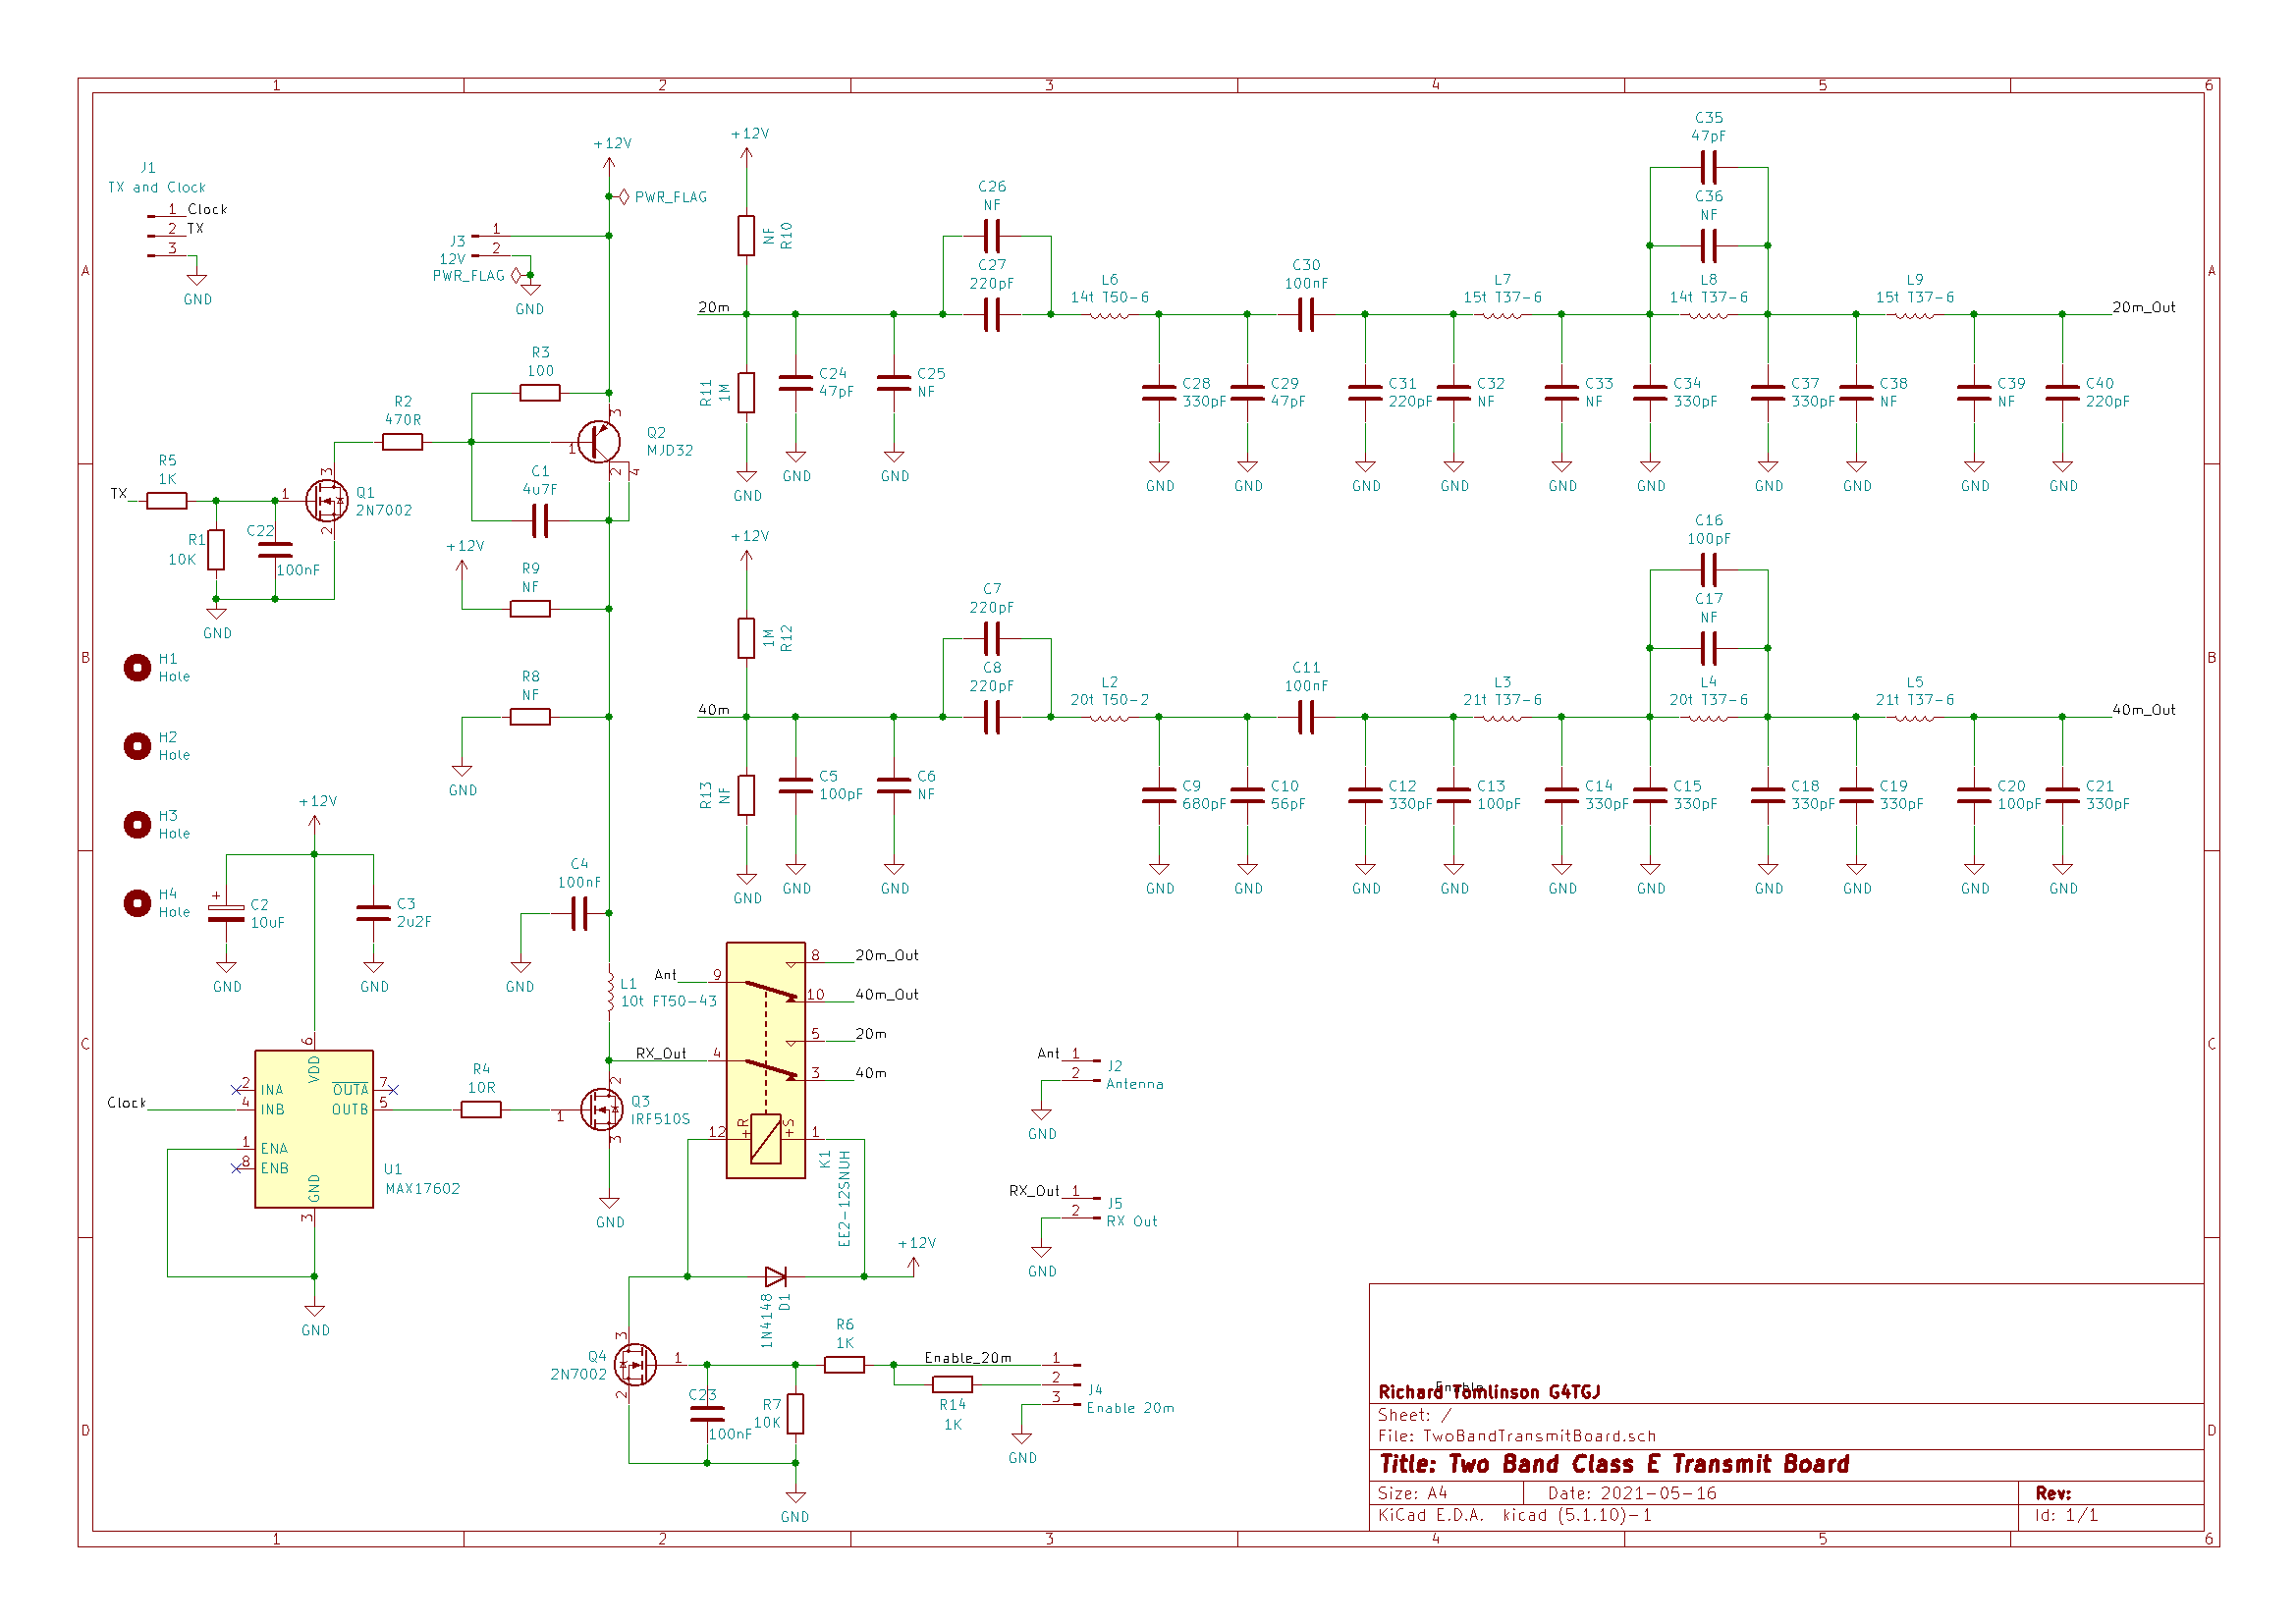 2 Band Transmit Board schematic